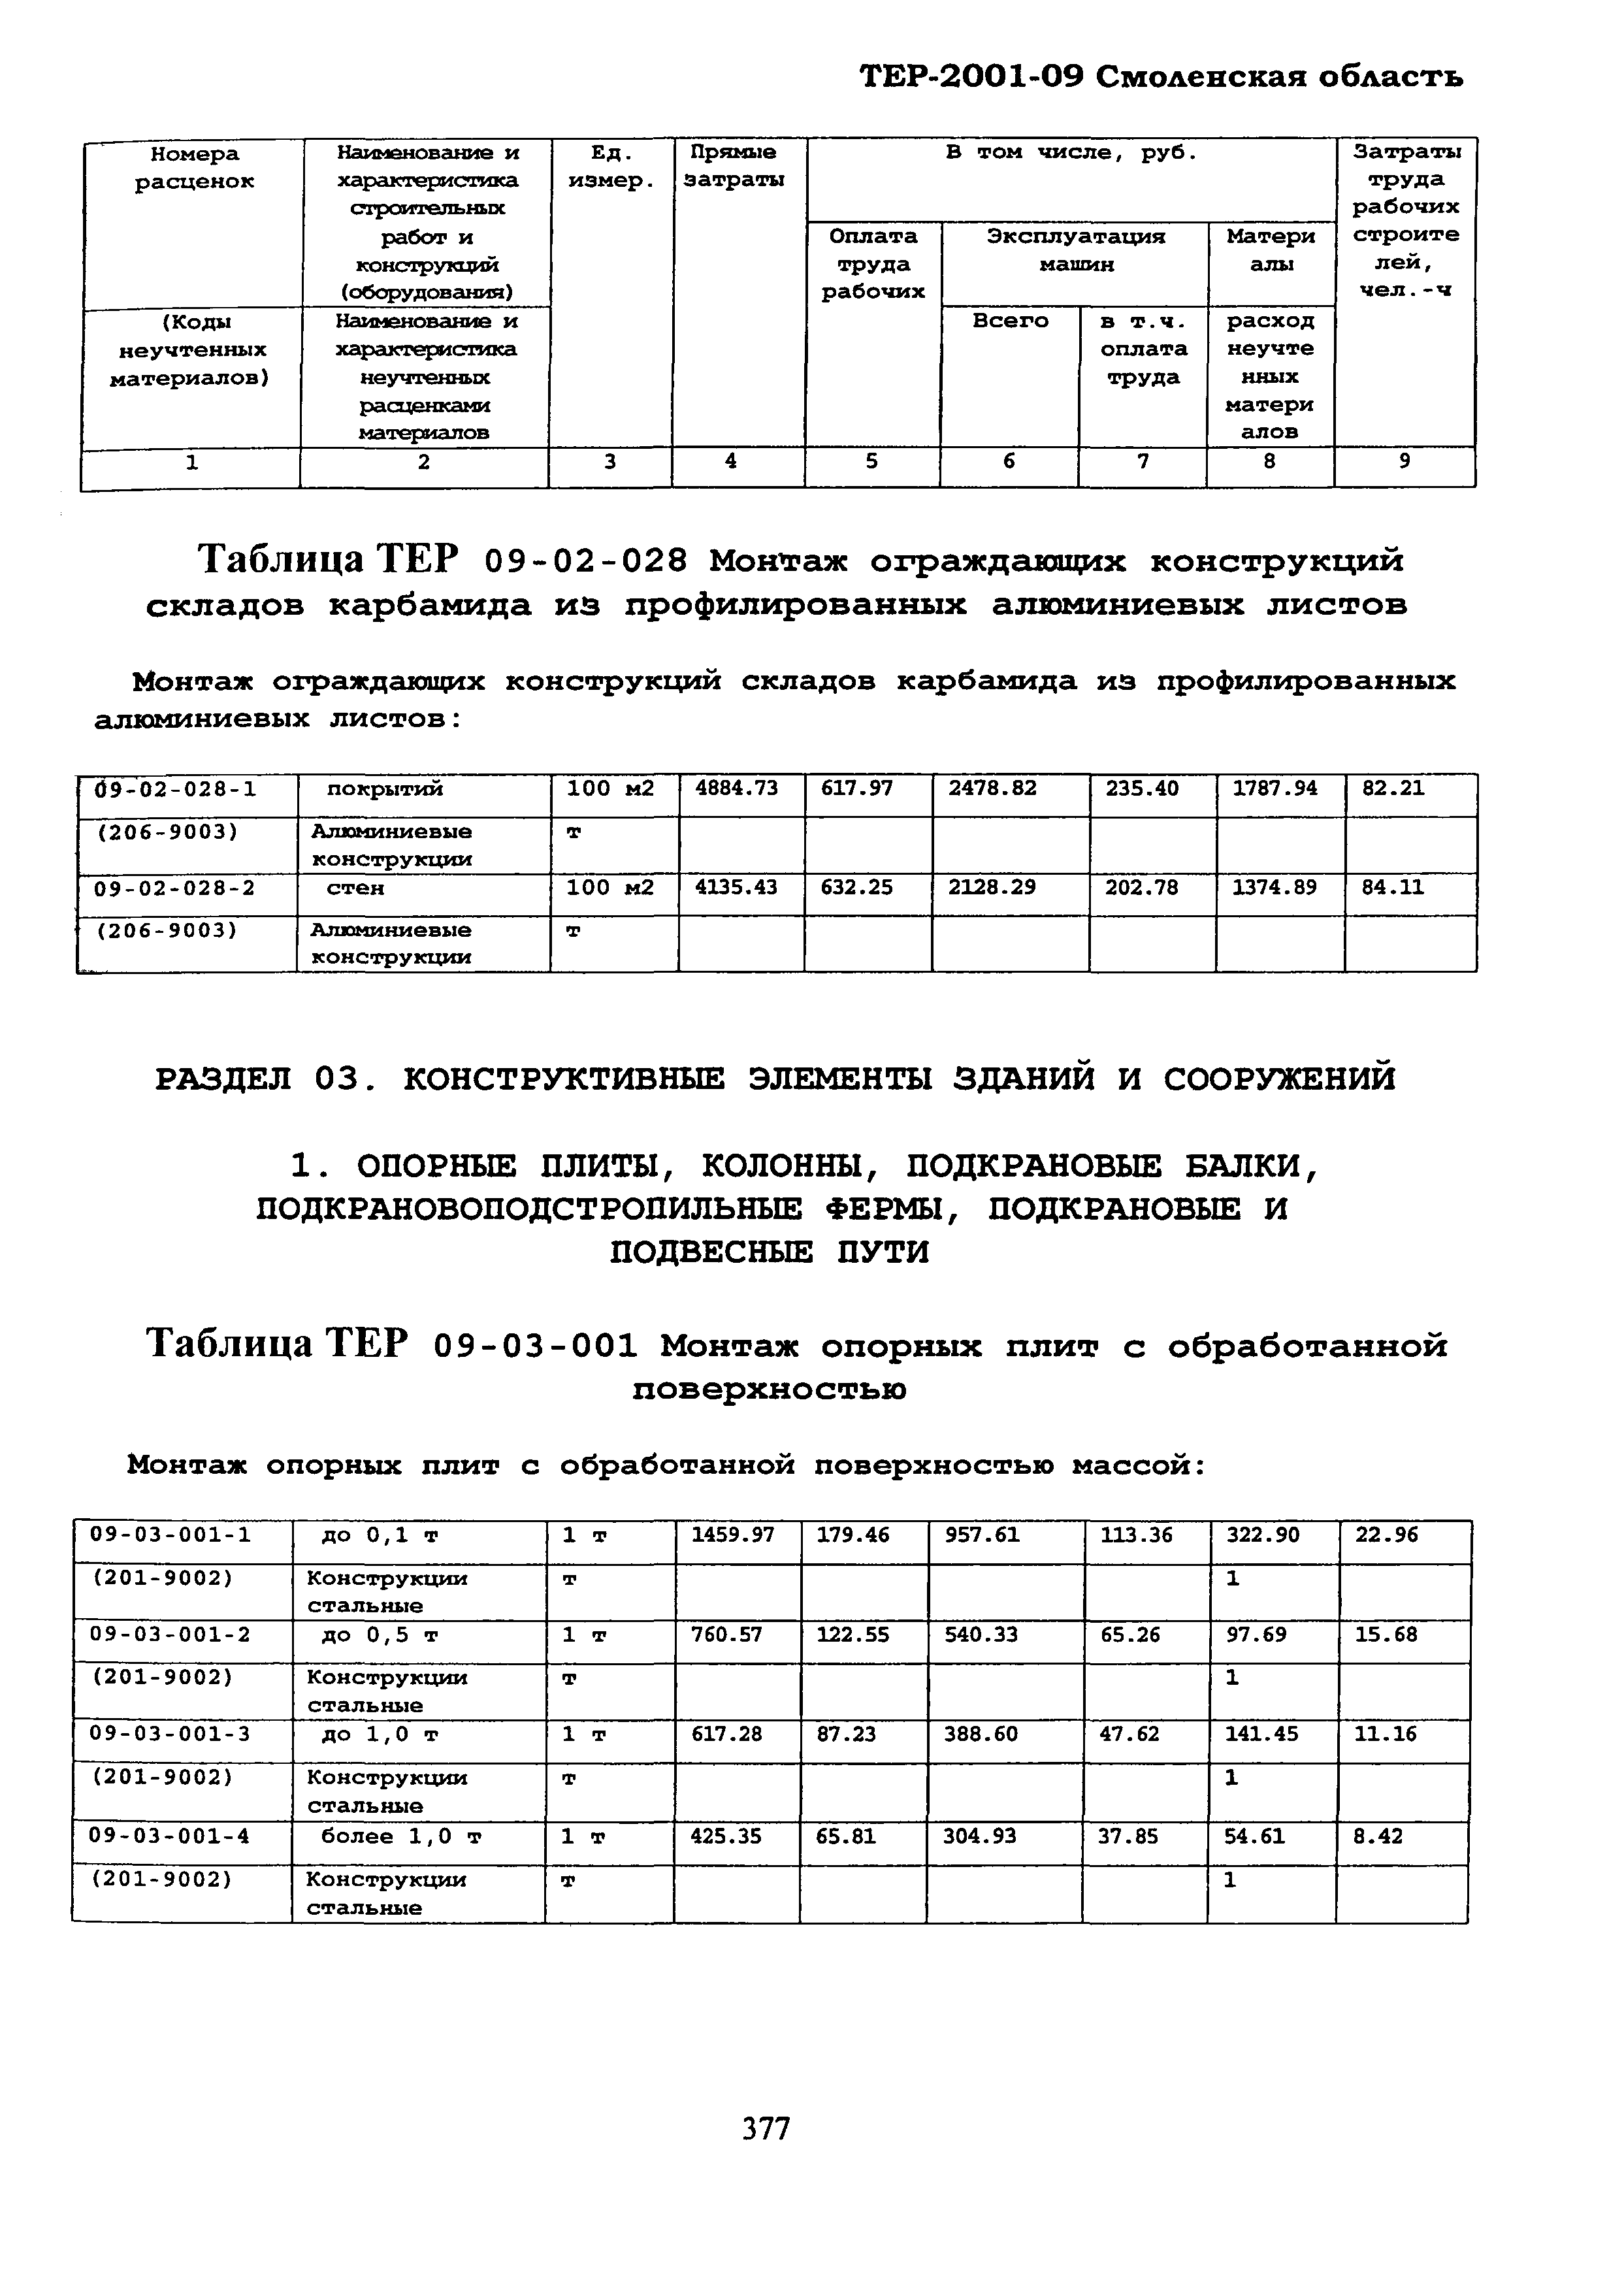 ТЕР Смоленской обл. 2001-09